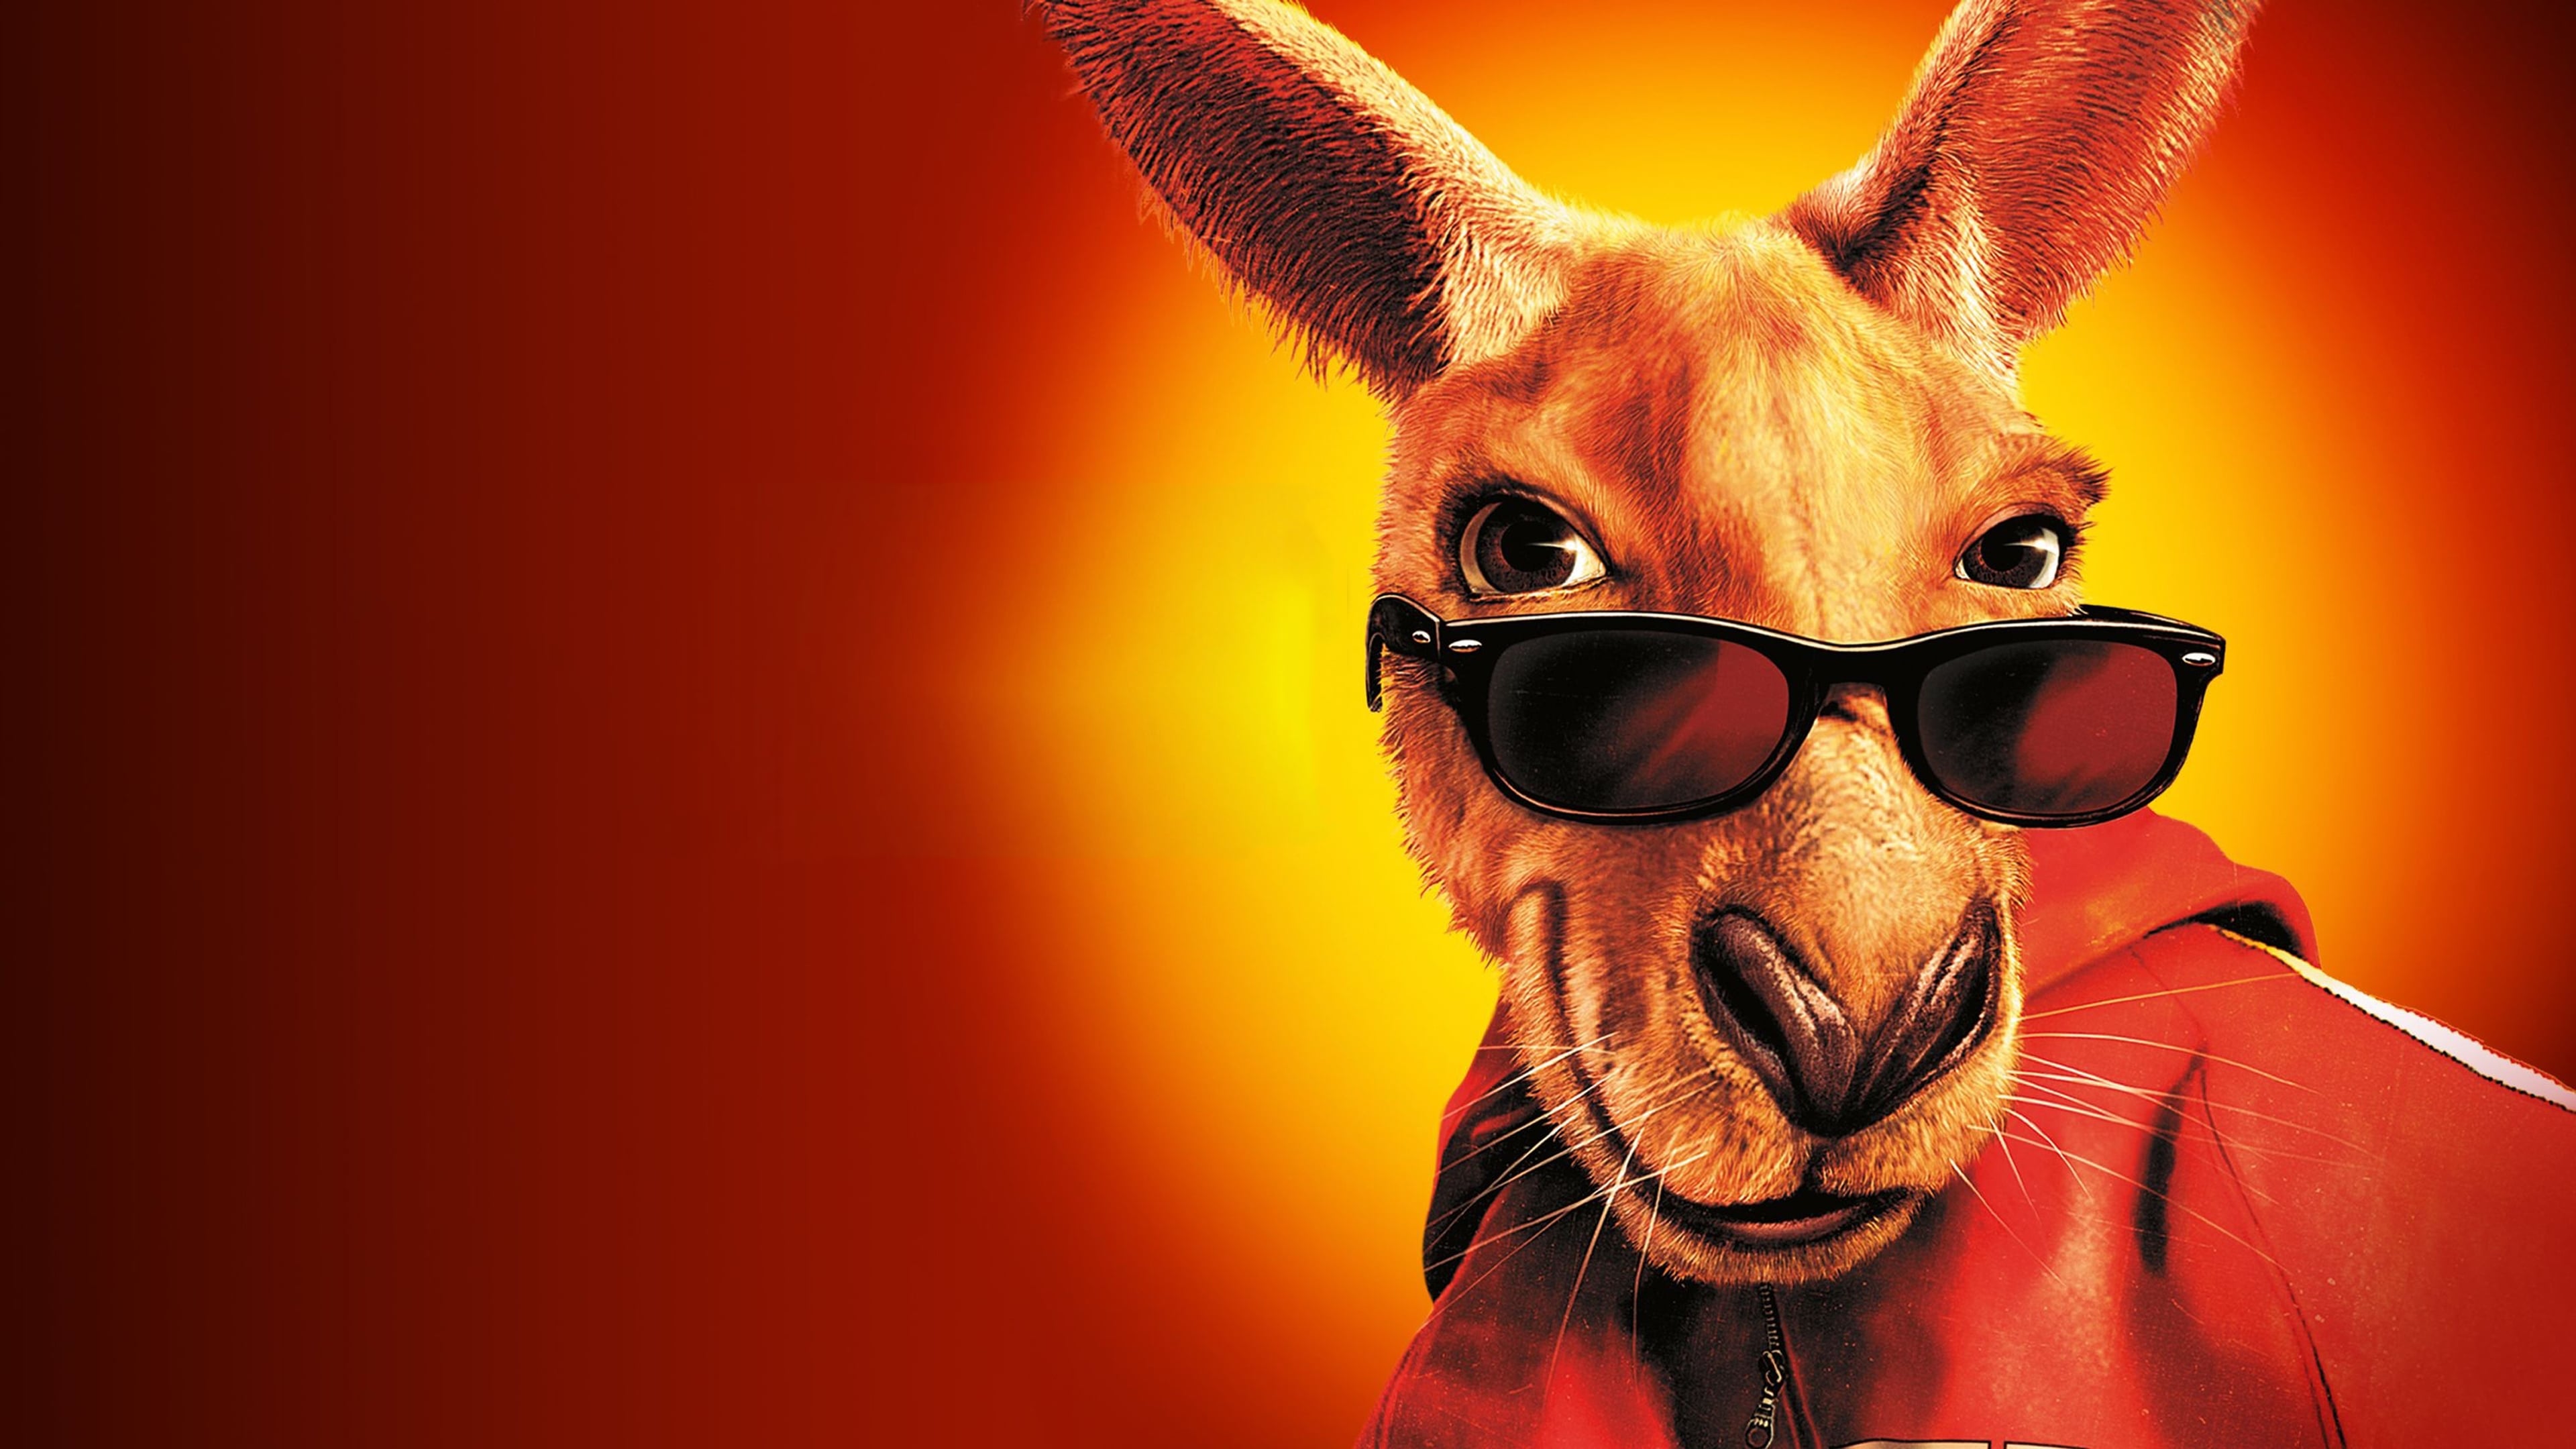 Смотреть фильм кенгуру джекпот 2003 онлайн бесплатно joycasino мобильная версия играть использовании